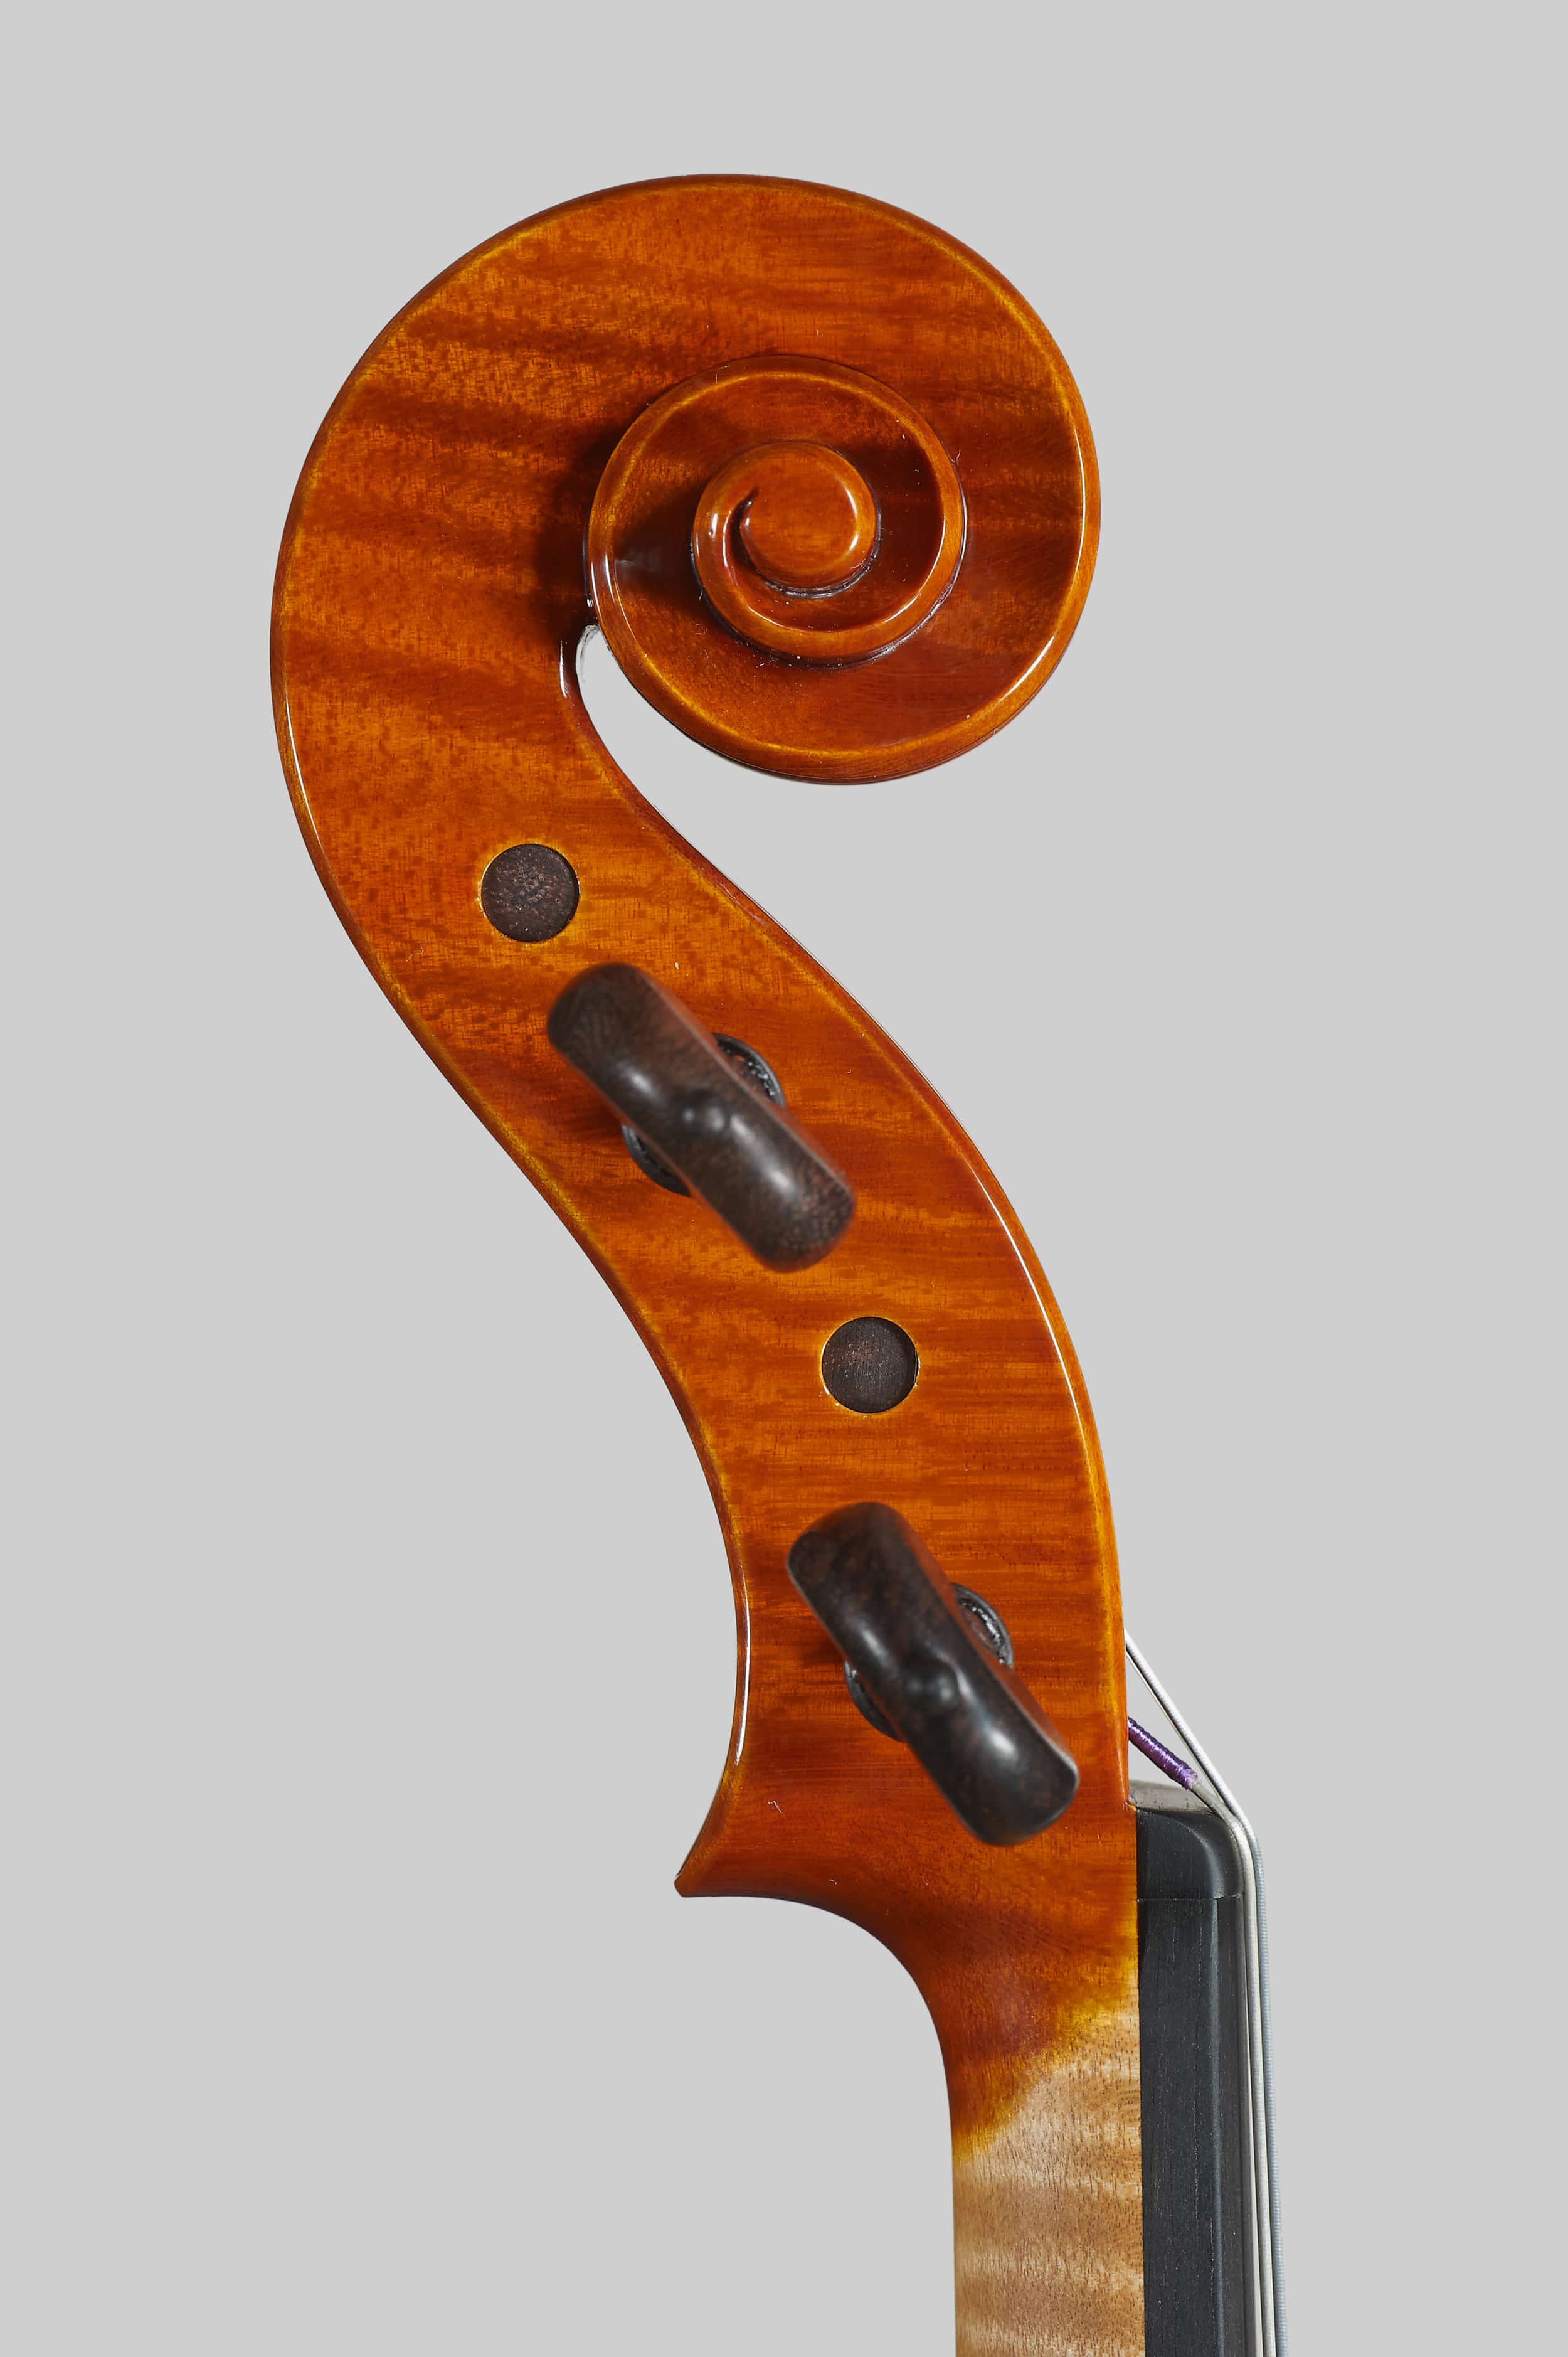 Anno 2015 – Violino modello stile A. Stradivari “Viotti” 1709 - Testa sinistra